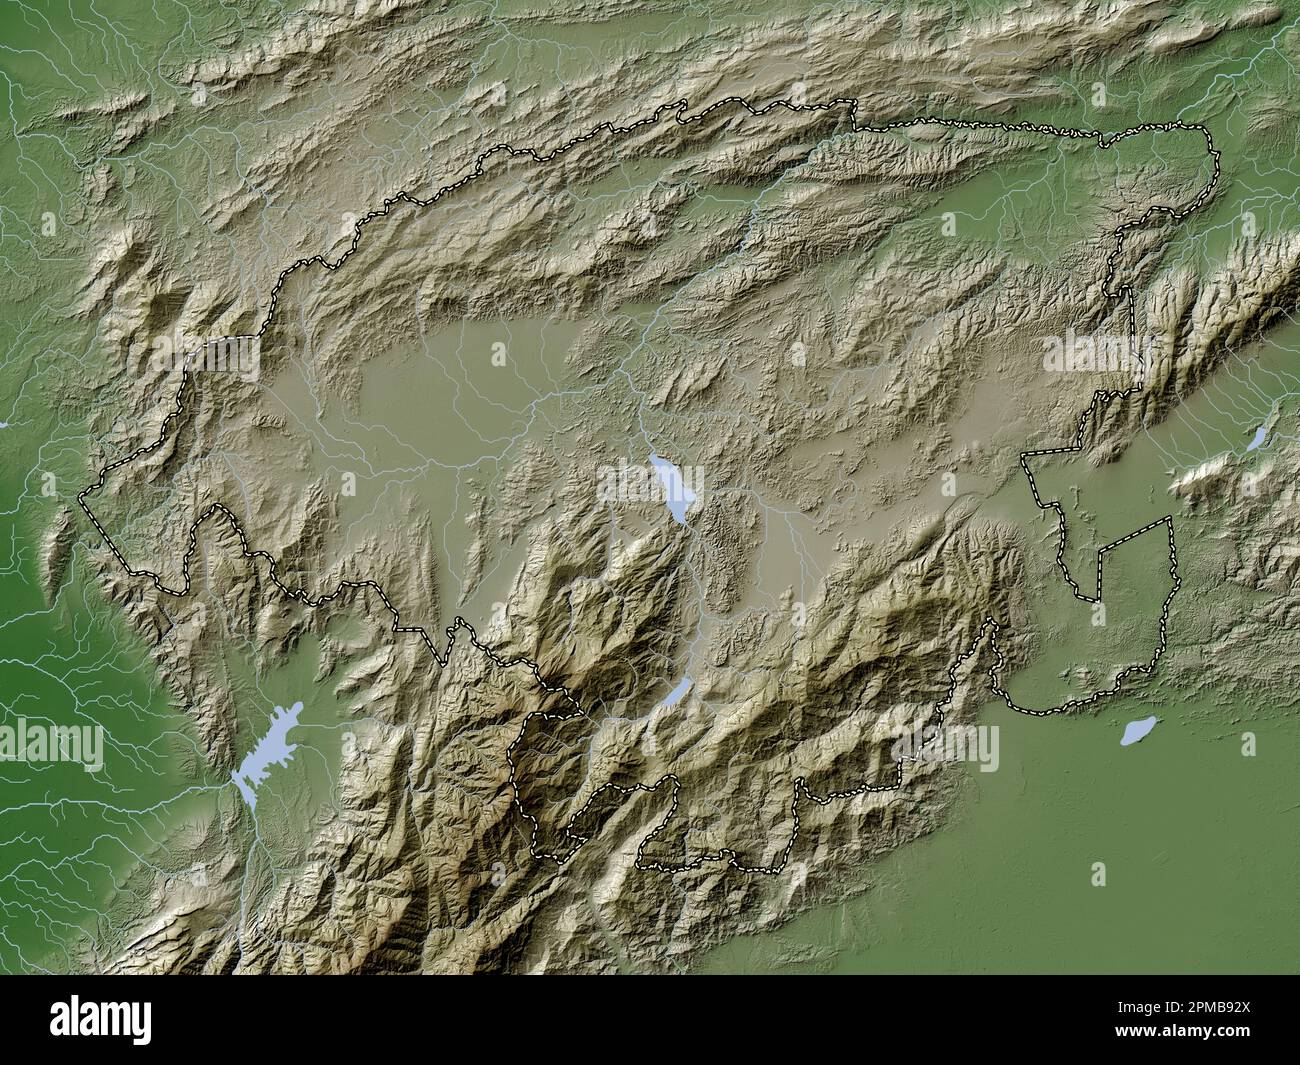 Lara, État du Venezuela. Carte d'altitude colorée en style wiki avec lacs et rivières Banque D'Images